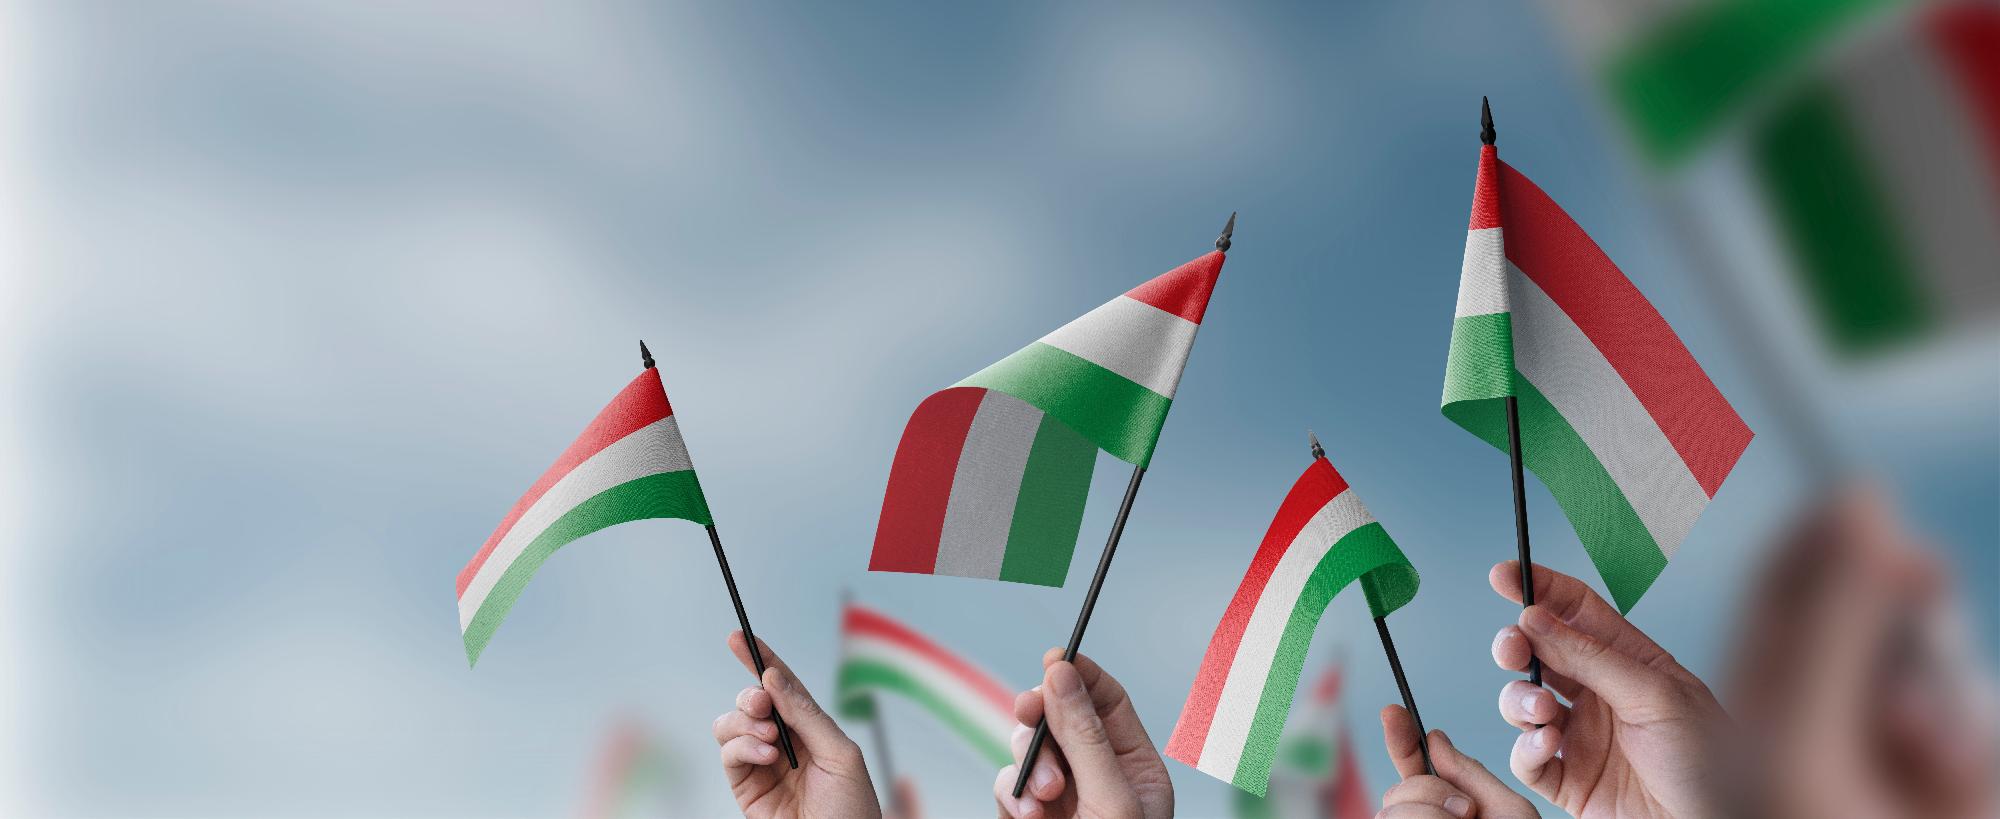 Az Egyesült Államokban több mint 1,4 millióan vallják magukat magyarnak, vagy magyar származásúnak